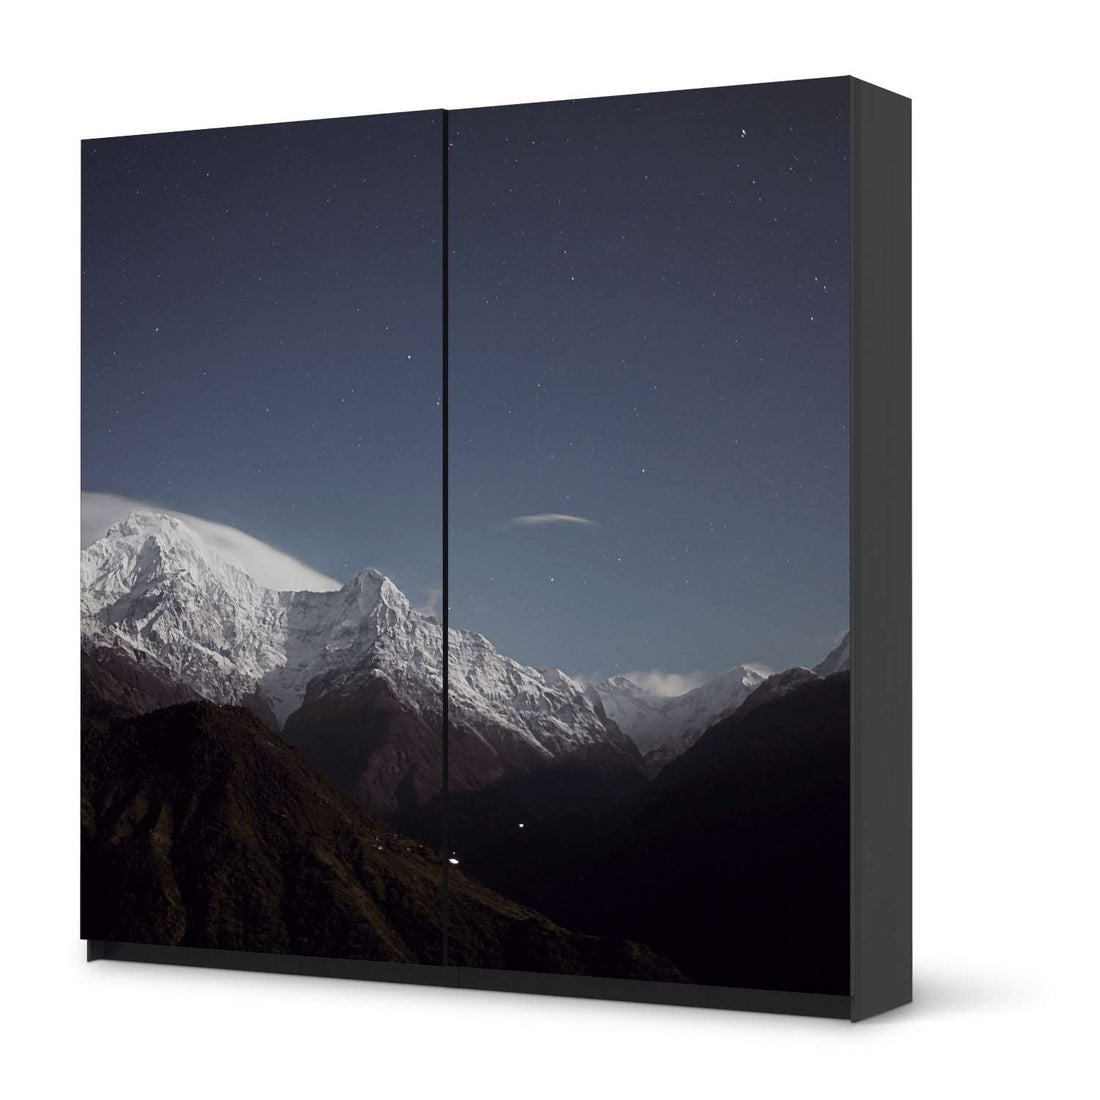 Möbel Klebefolie Mountain Sky - IKEA Pax Schrank 201 cm Höhe - Schiebetür - schwarz